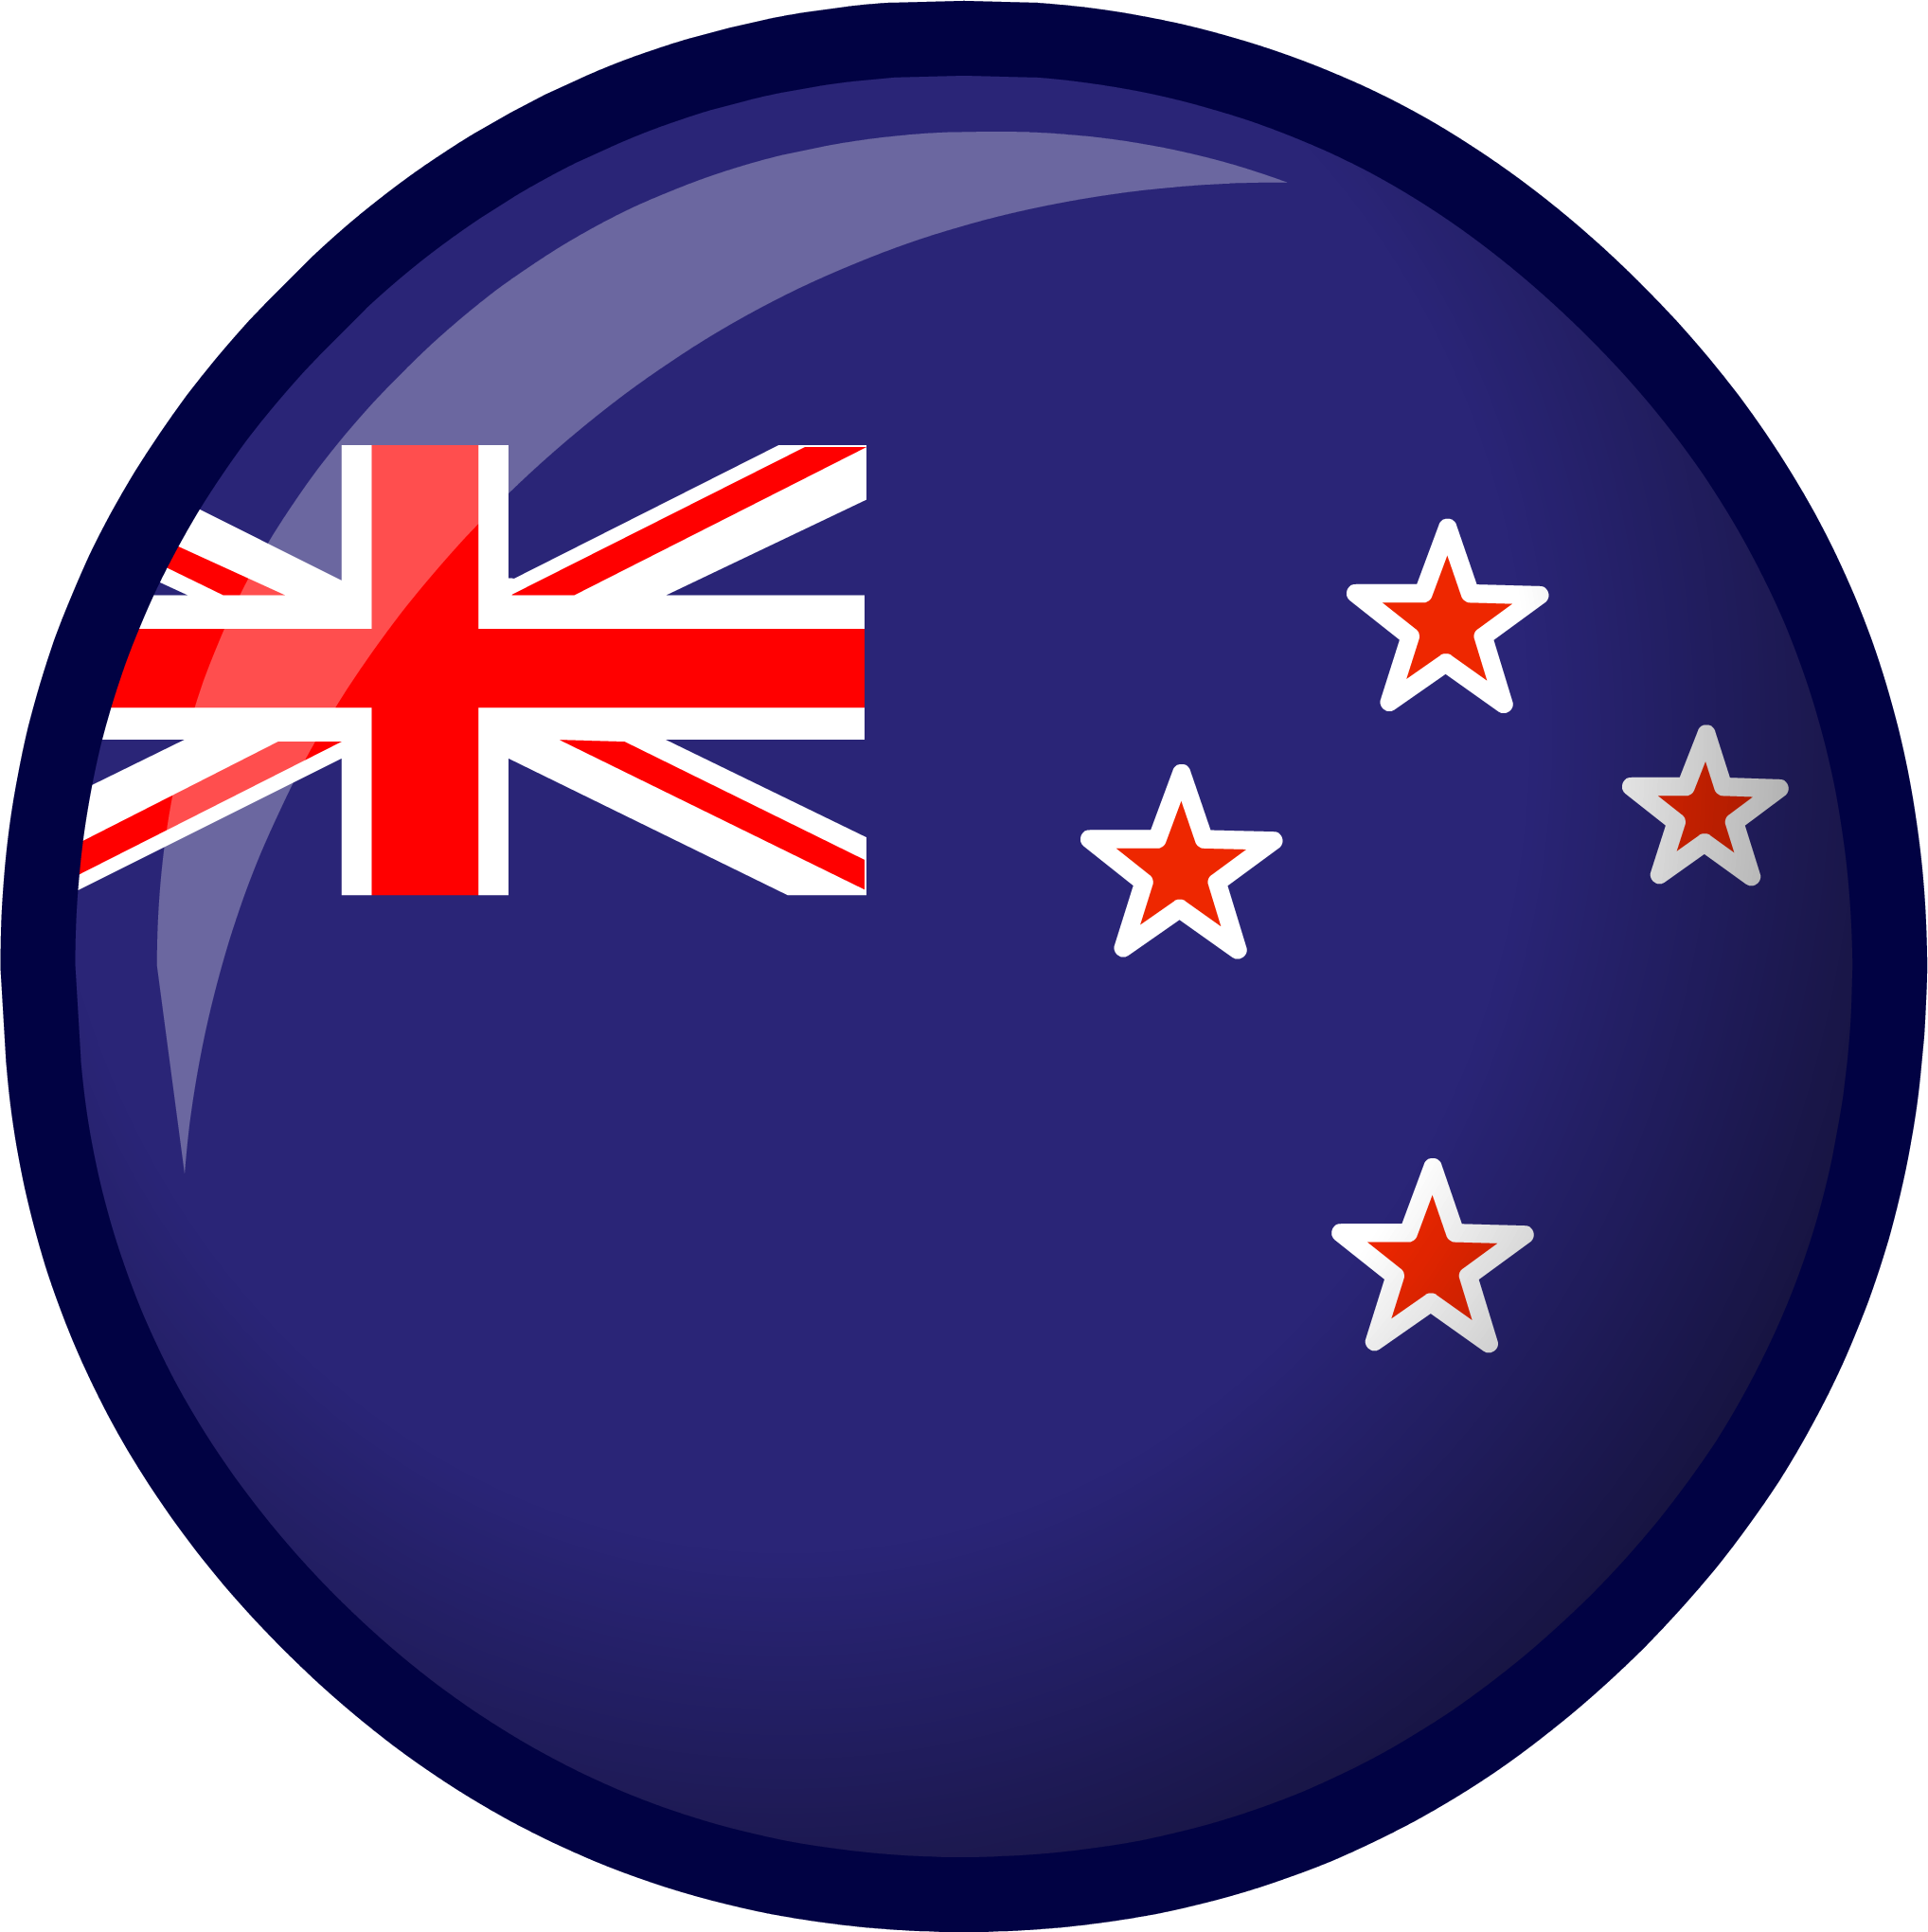 عکس پرچم کشور نیوزیلند